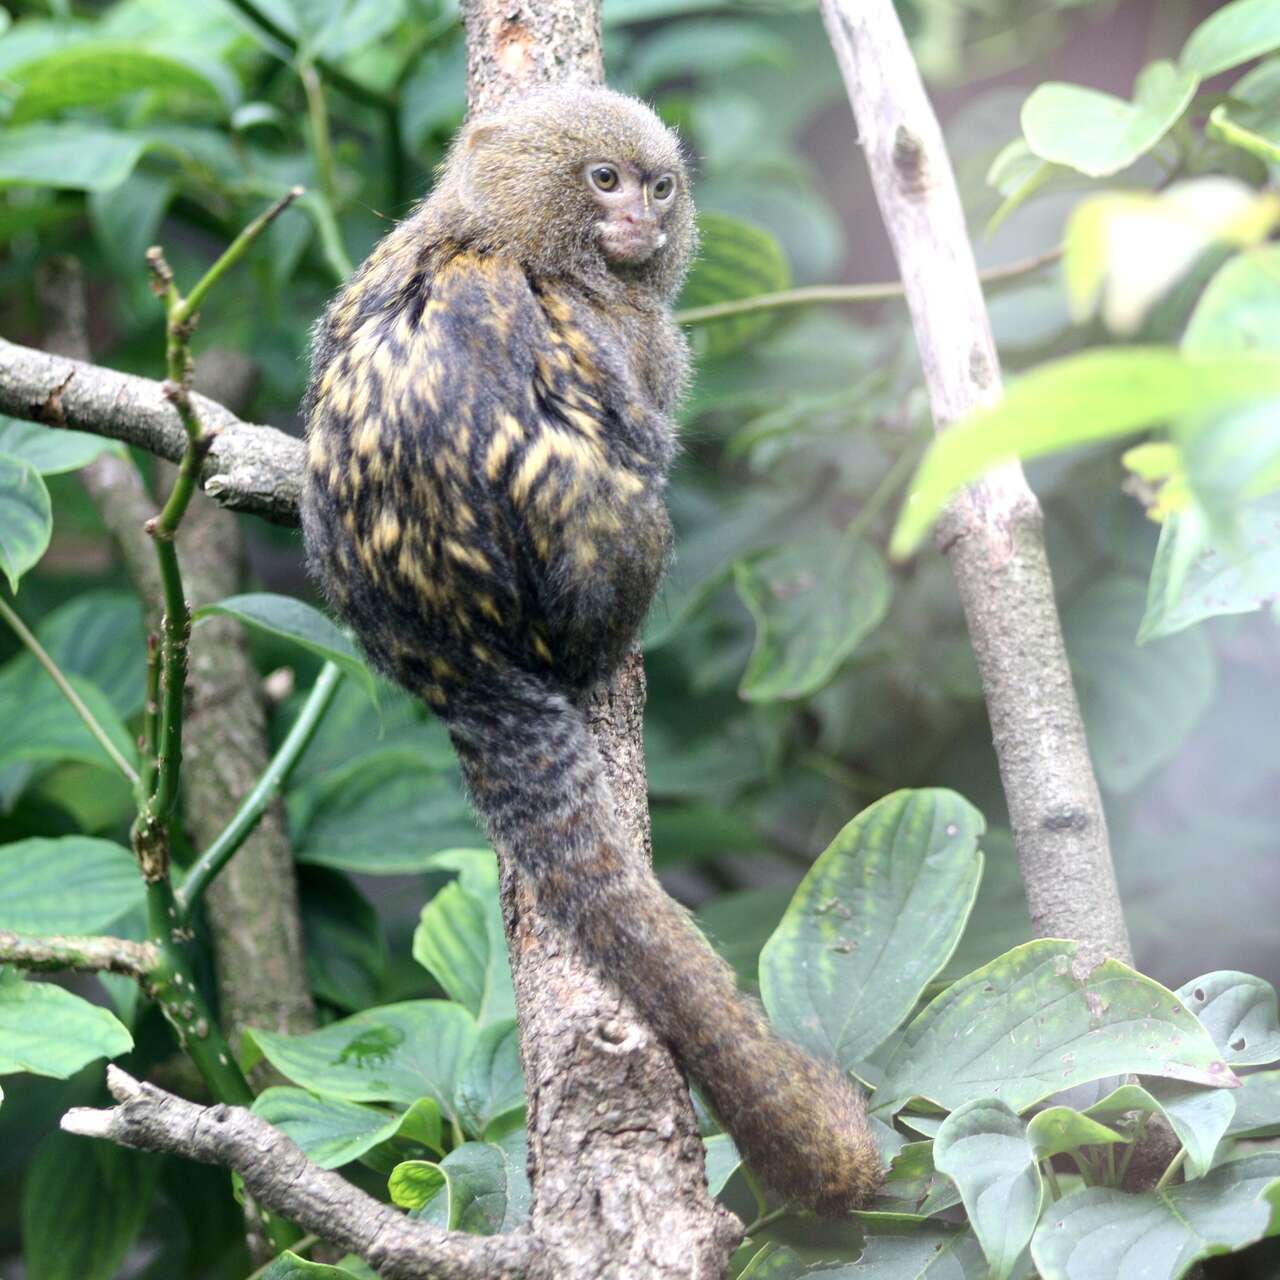 Le ouistiti pygmée, un singe miniature - Photos Futura